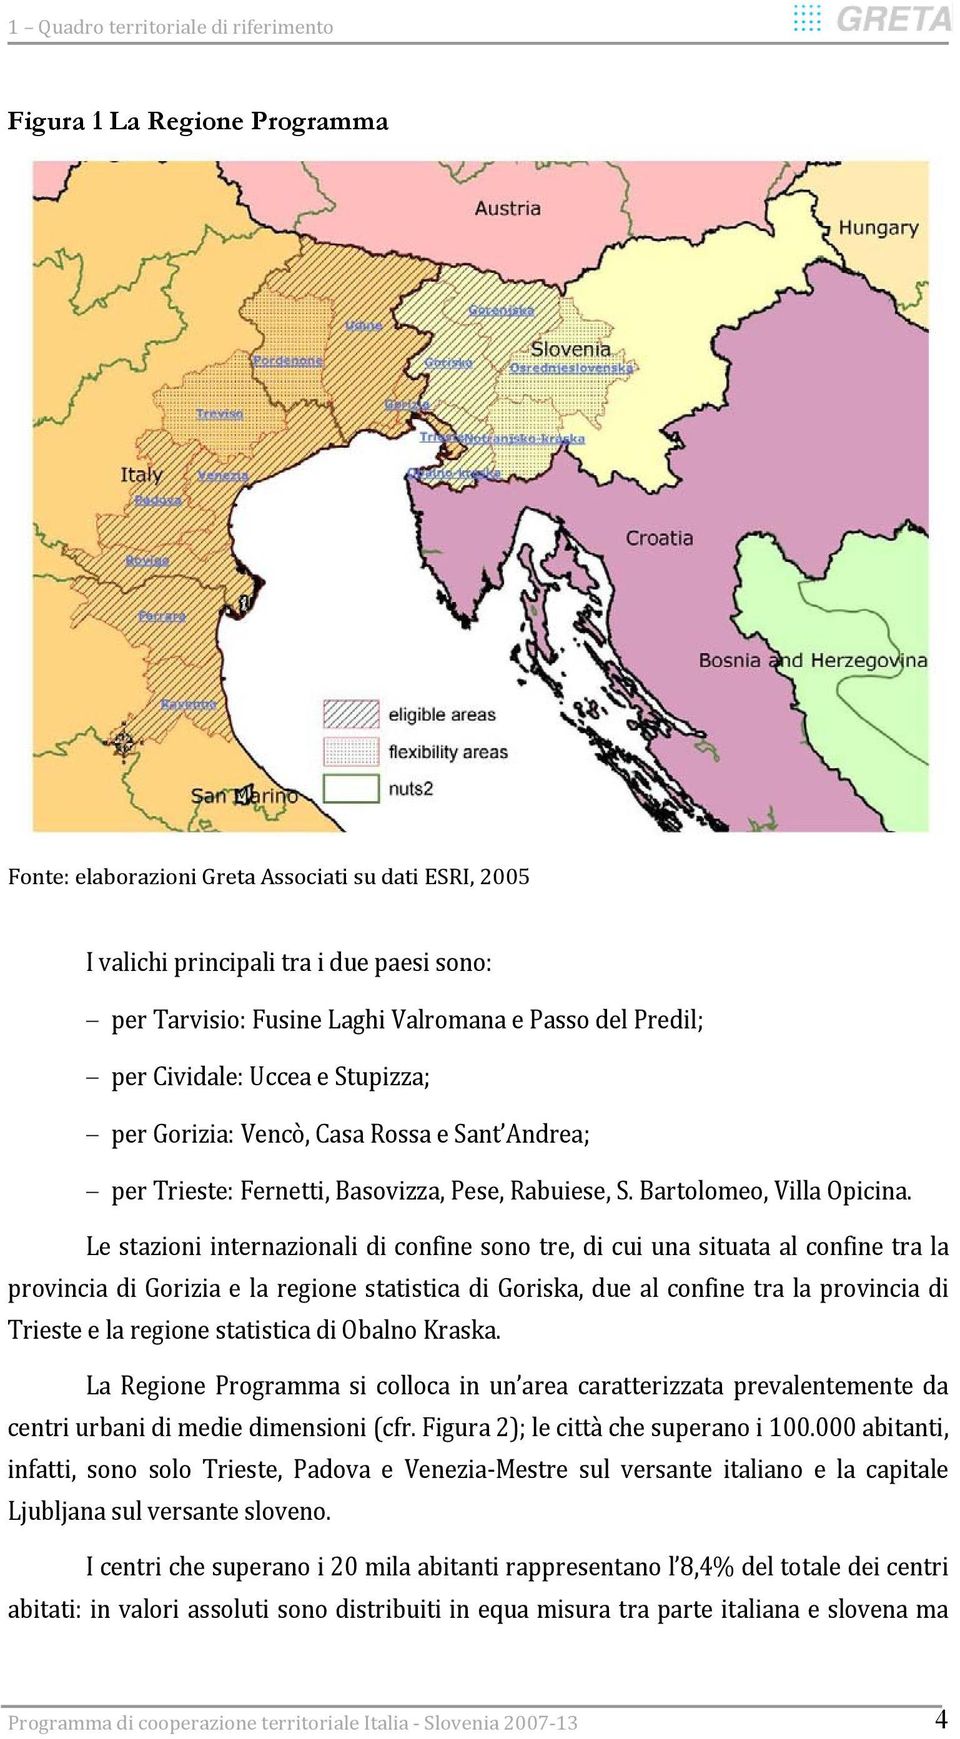 Le stazioni internazionali di confine sono tre, di cui una situata al confine tra la provincia di Gorizia e la regione statistica di Goriska, due al confine tra la provincia di Trieste e la regione